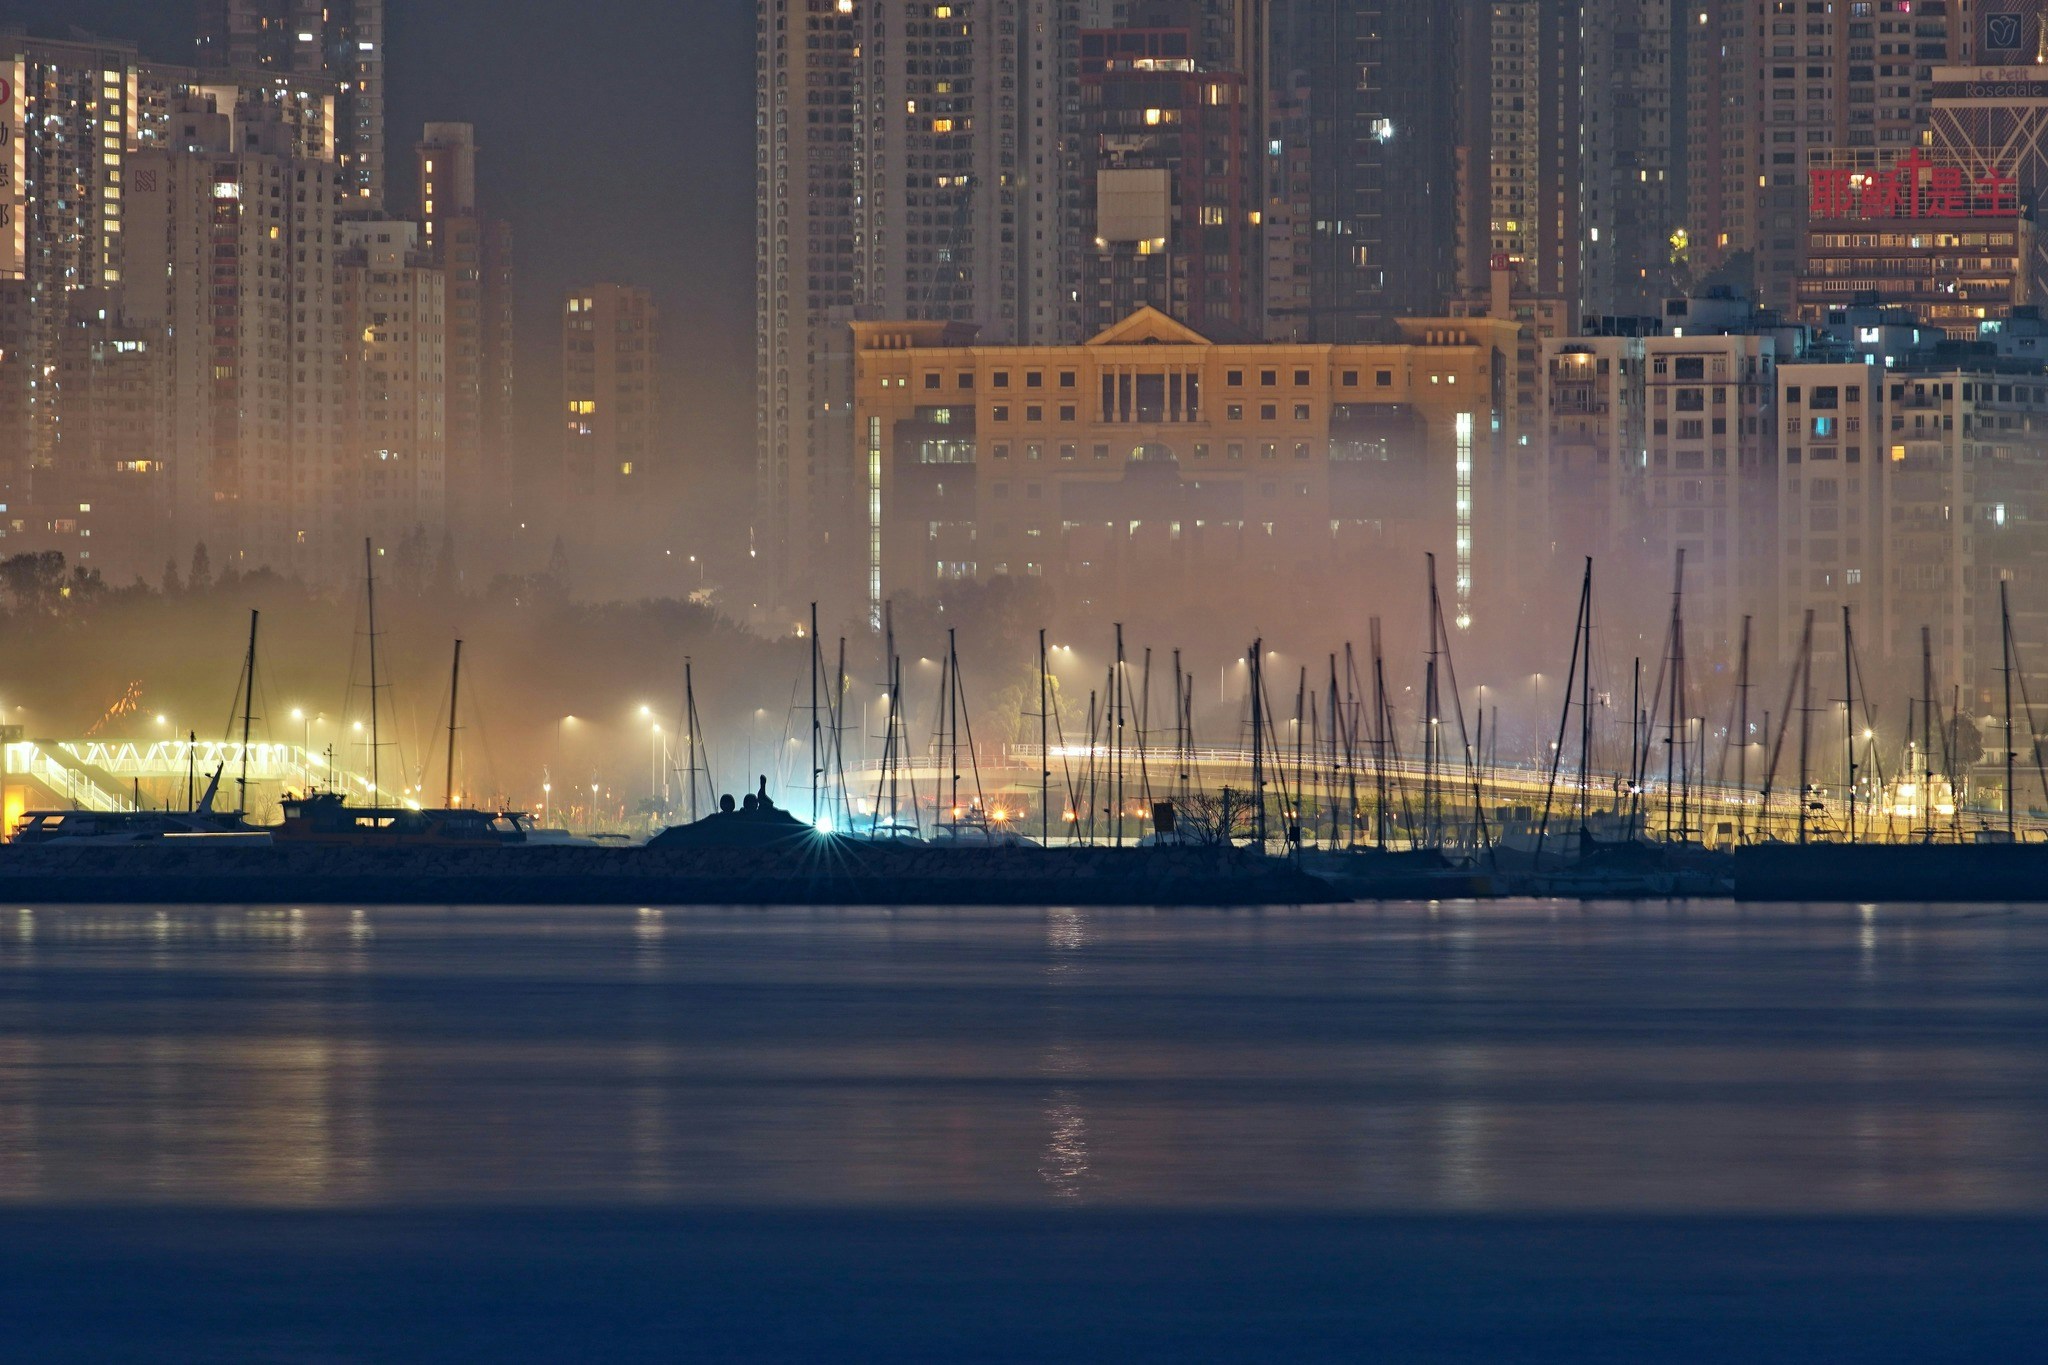 3月18日清晨5至6时在尖东可看到维港海面有一道薄雾。（Chung Ming Lee摄／Facebook社区天气观测计划CWOS专页）